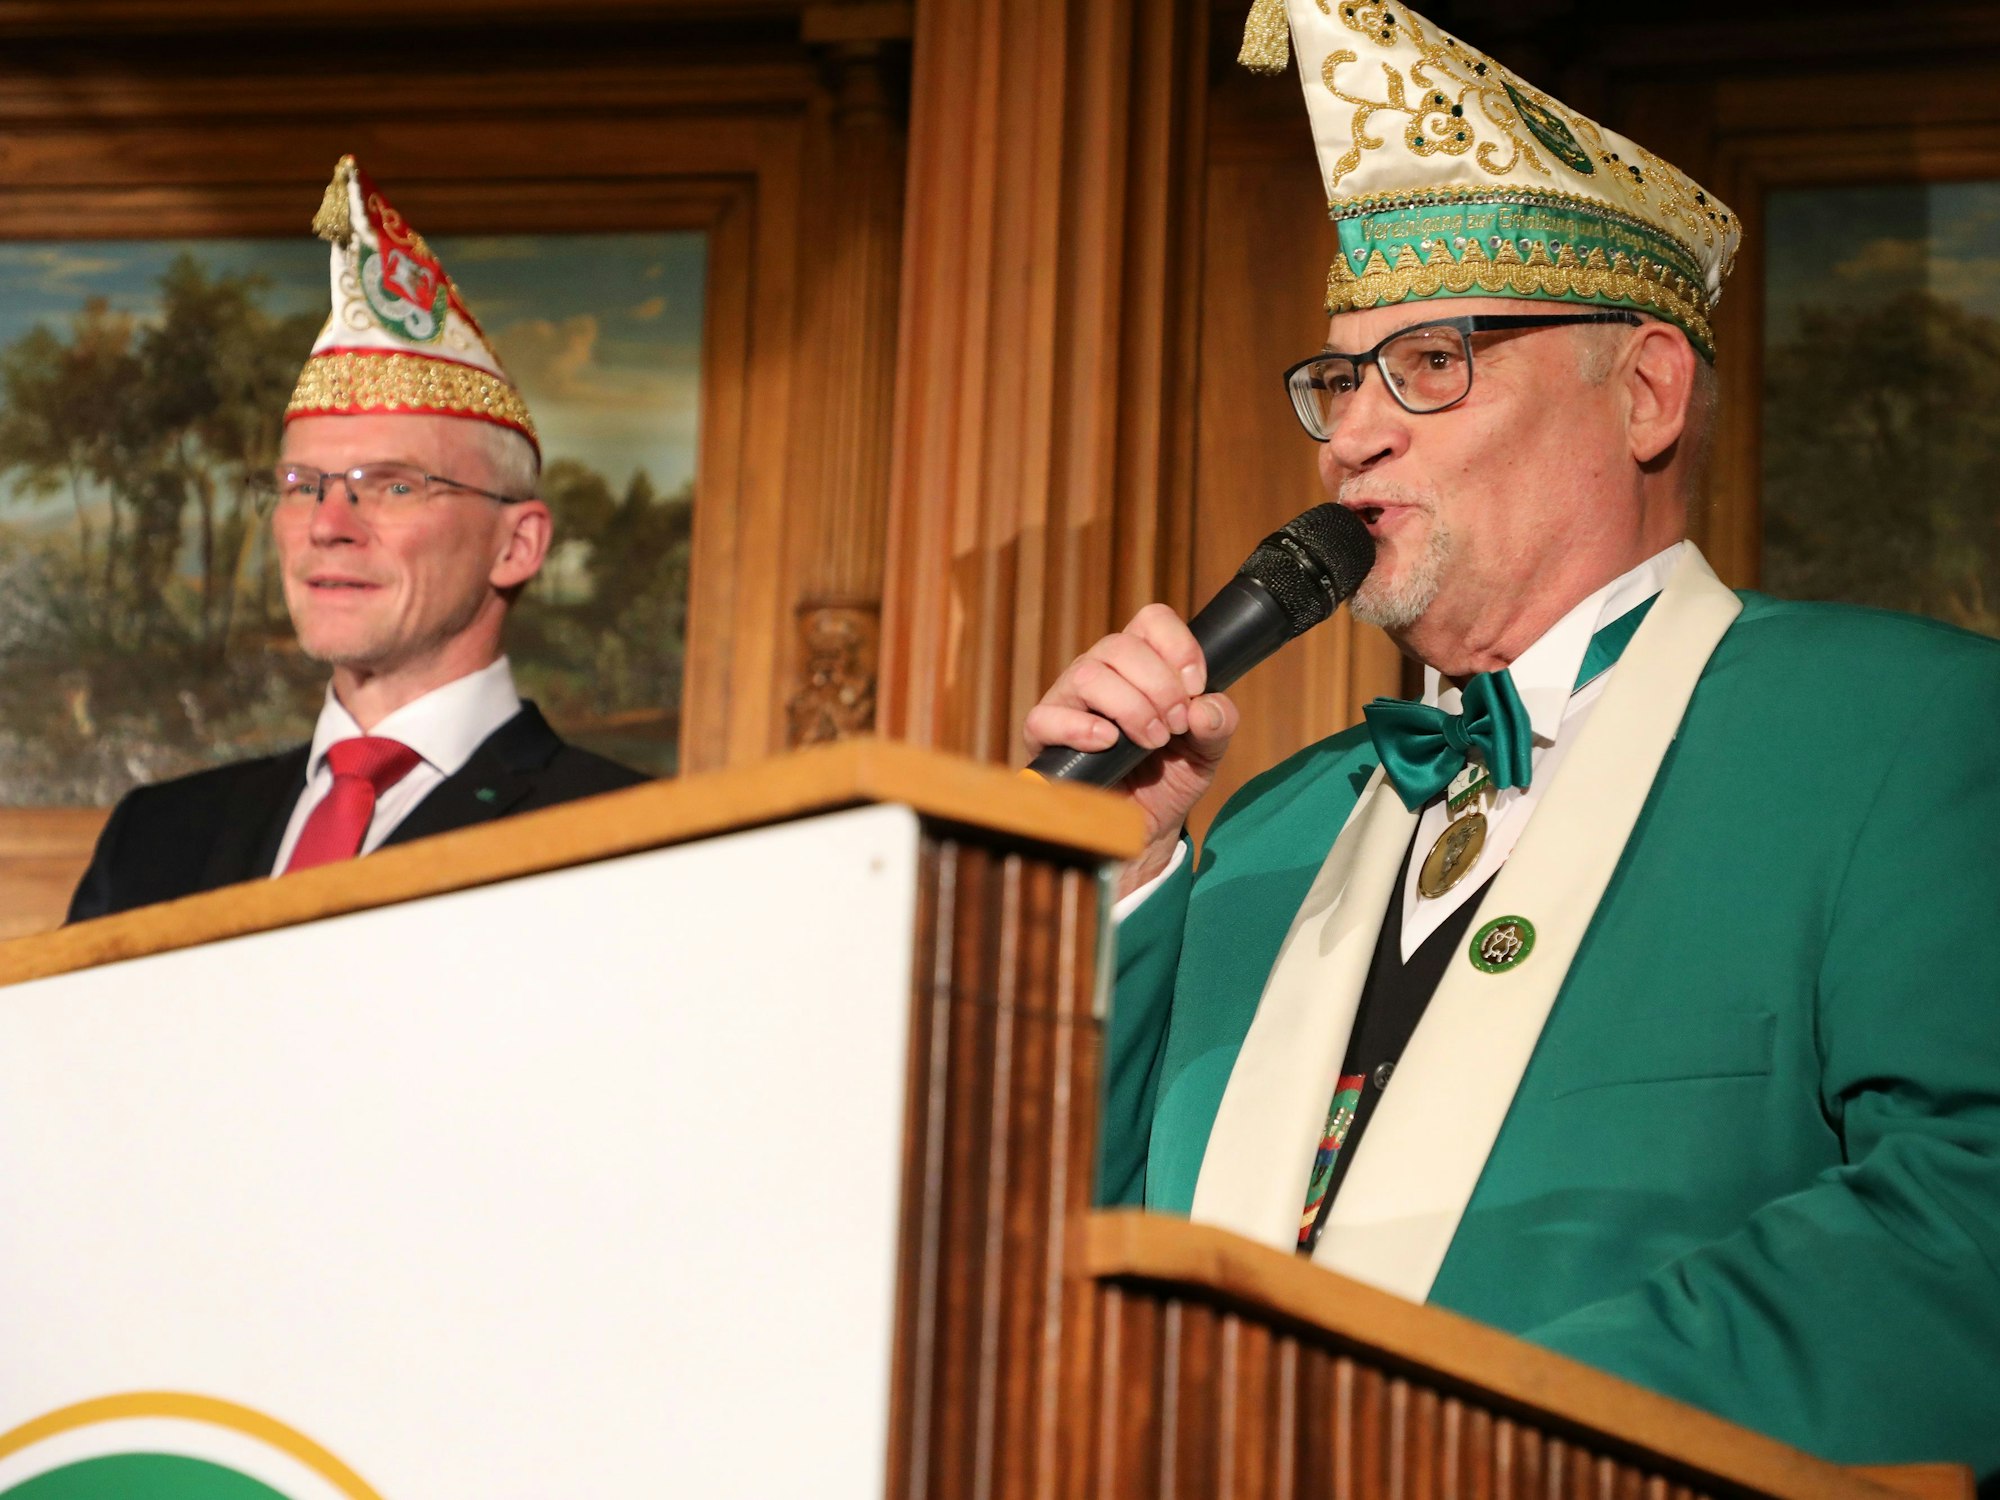 Bürgermeister Frank Stein (links) und Martin Gerstlauer von der Vereinigung zur Erhaltung und Pflege heimatlichen Brauchtums sprechen zu den Karnevalisten.